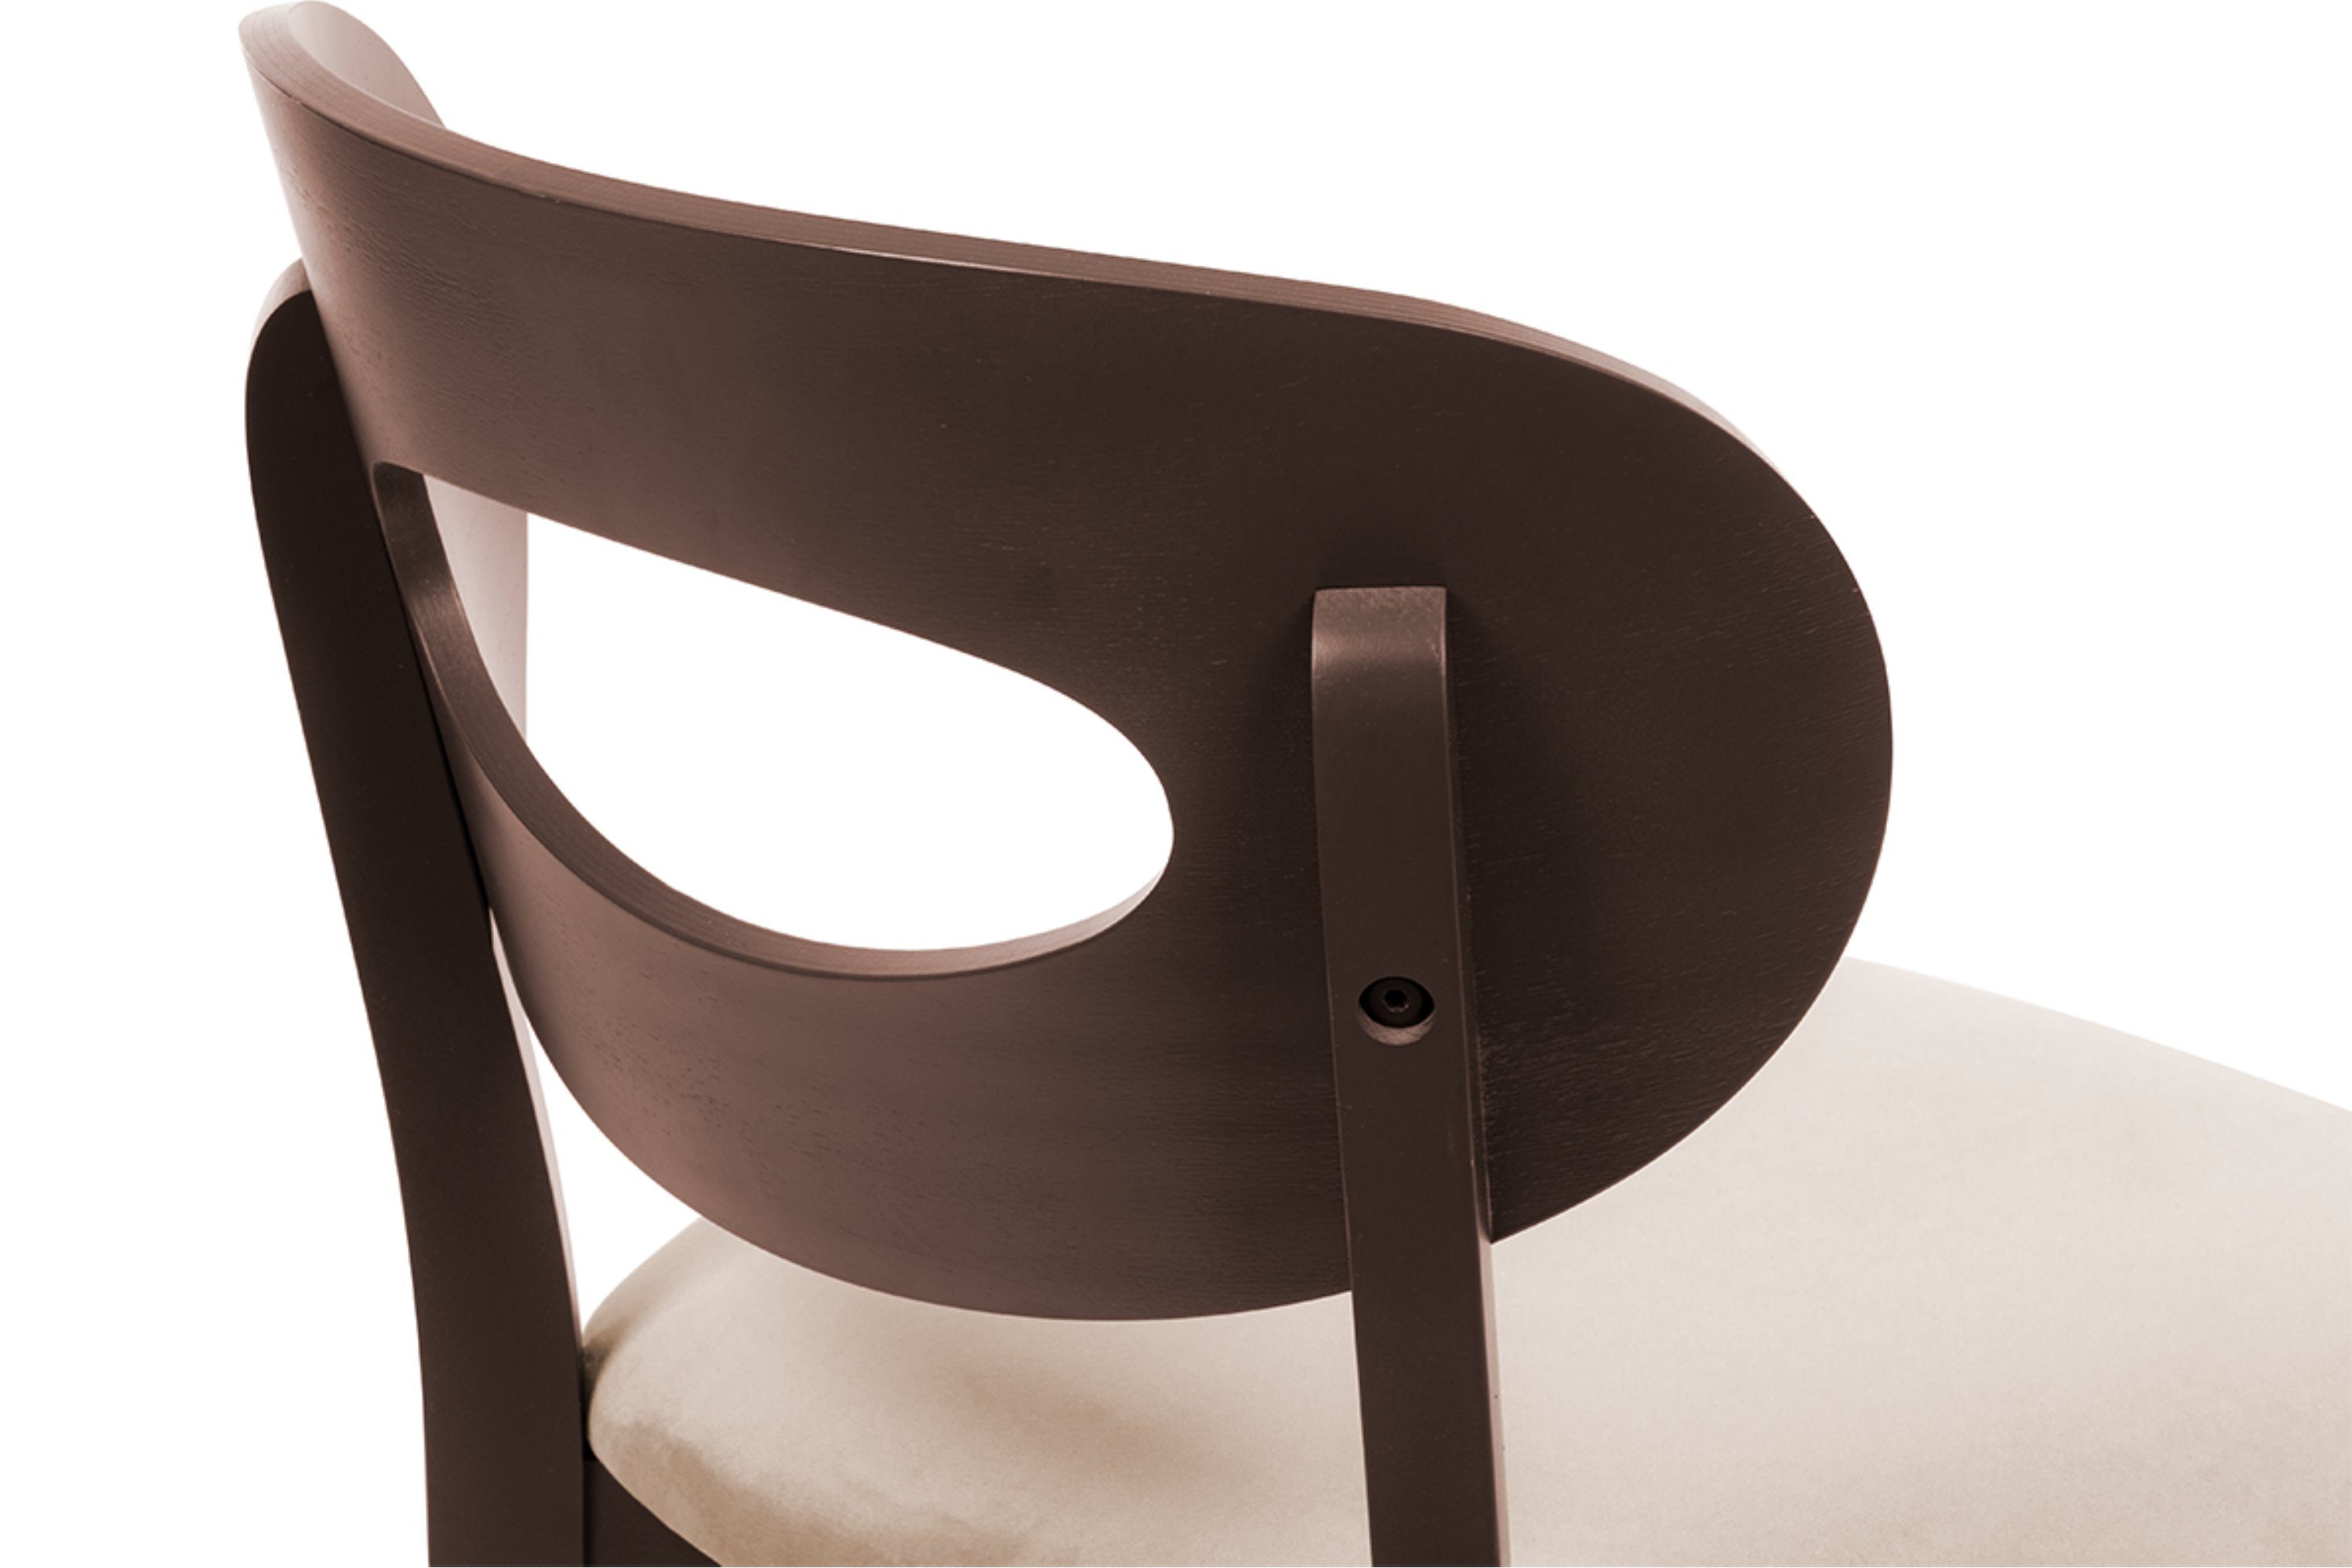 4-Fußstuhl Holzstühle Polsterstühle beige beige Esstischstuhl TANER | mahagoni / (Esszimmerstühl, Konsimo St) 2